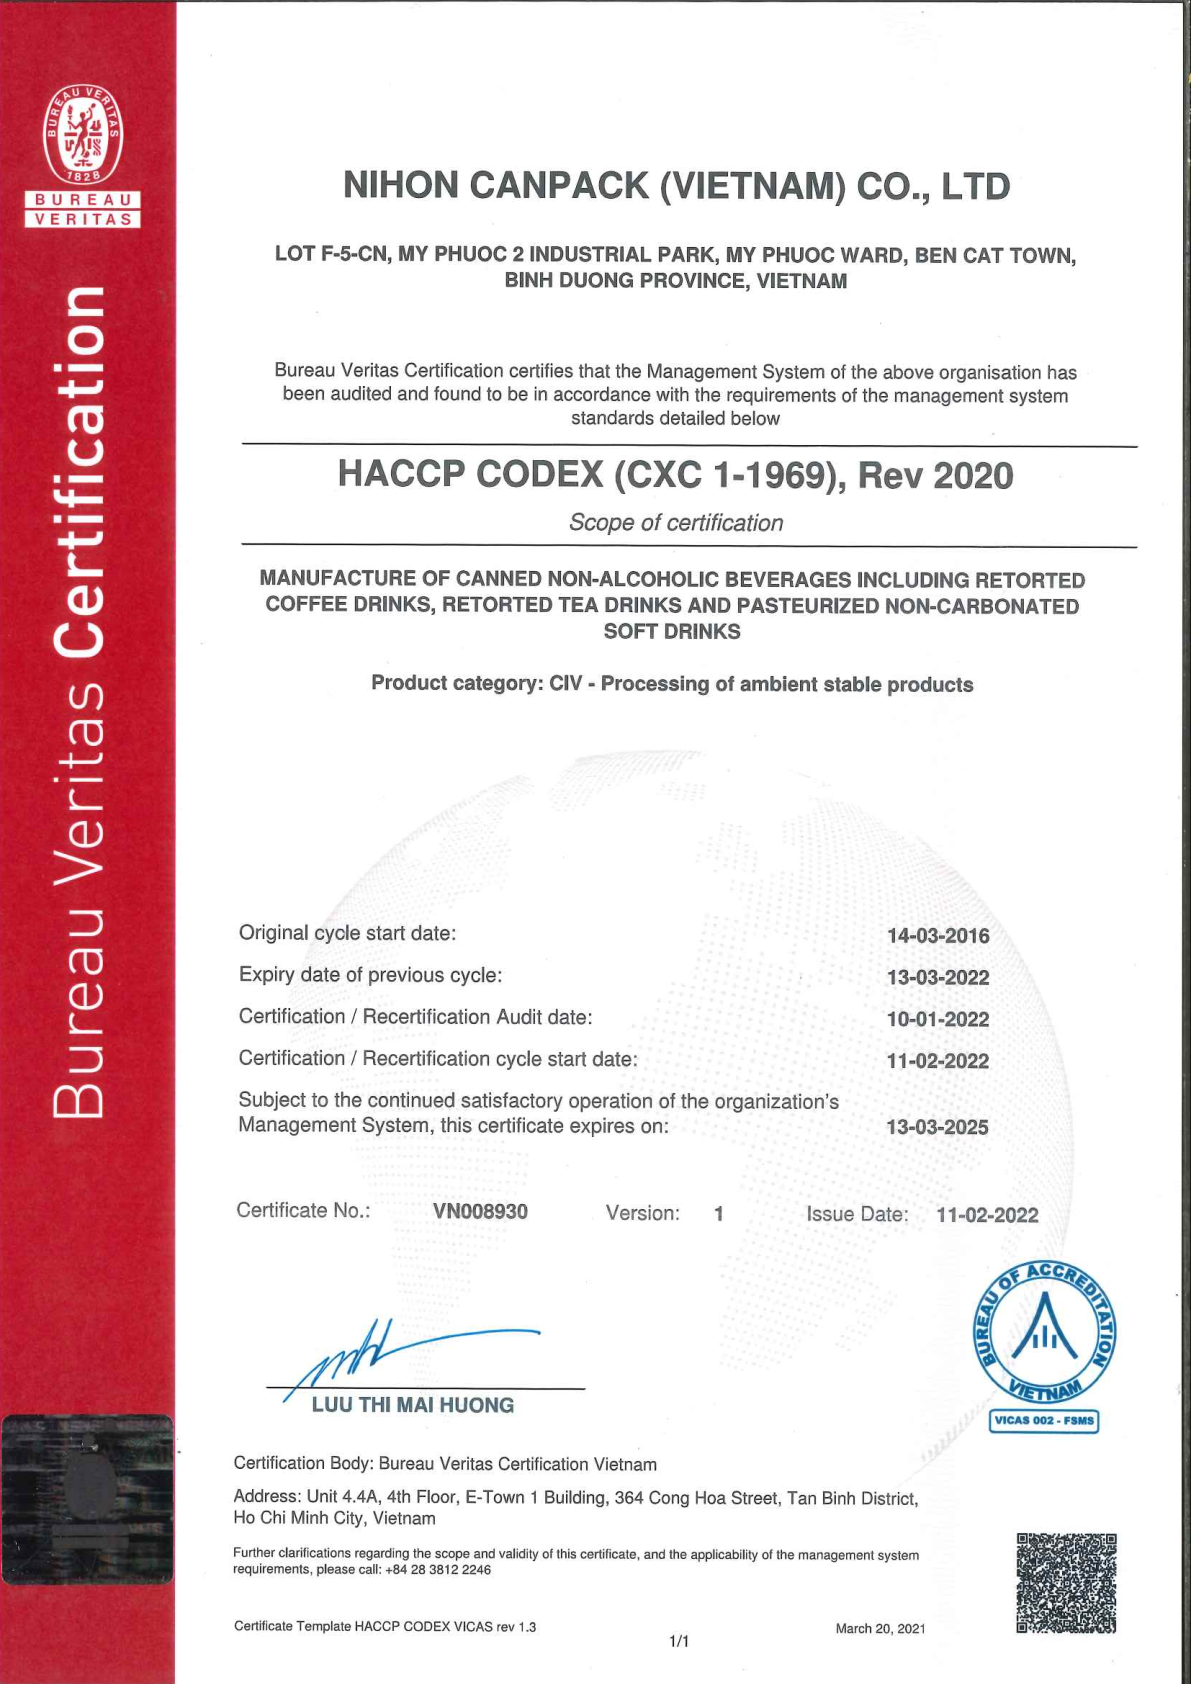 Certificate HACCP CODEX